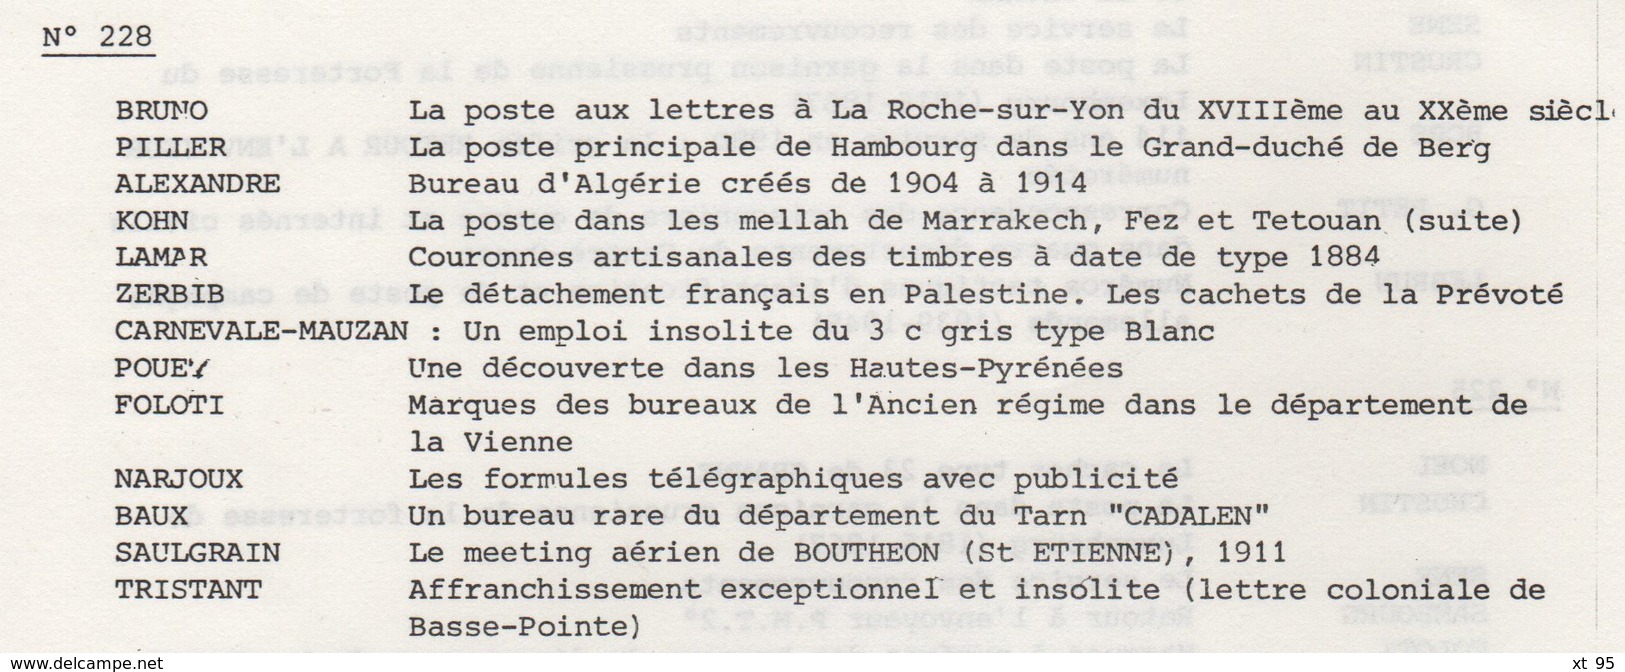 Les Feuilles Marcophiles - N°228 - Voir Sommaire - Frais De Port 2€ - Philatelie Und Postgeschichte